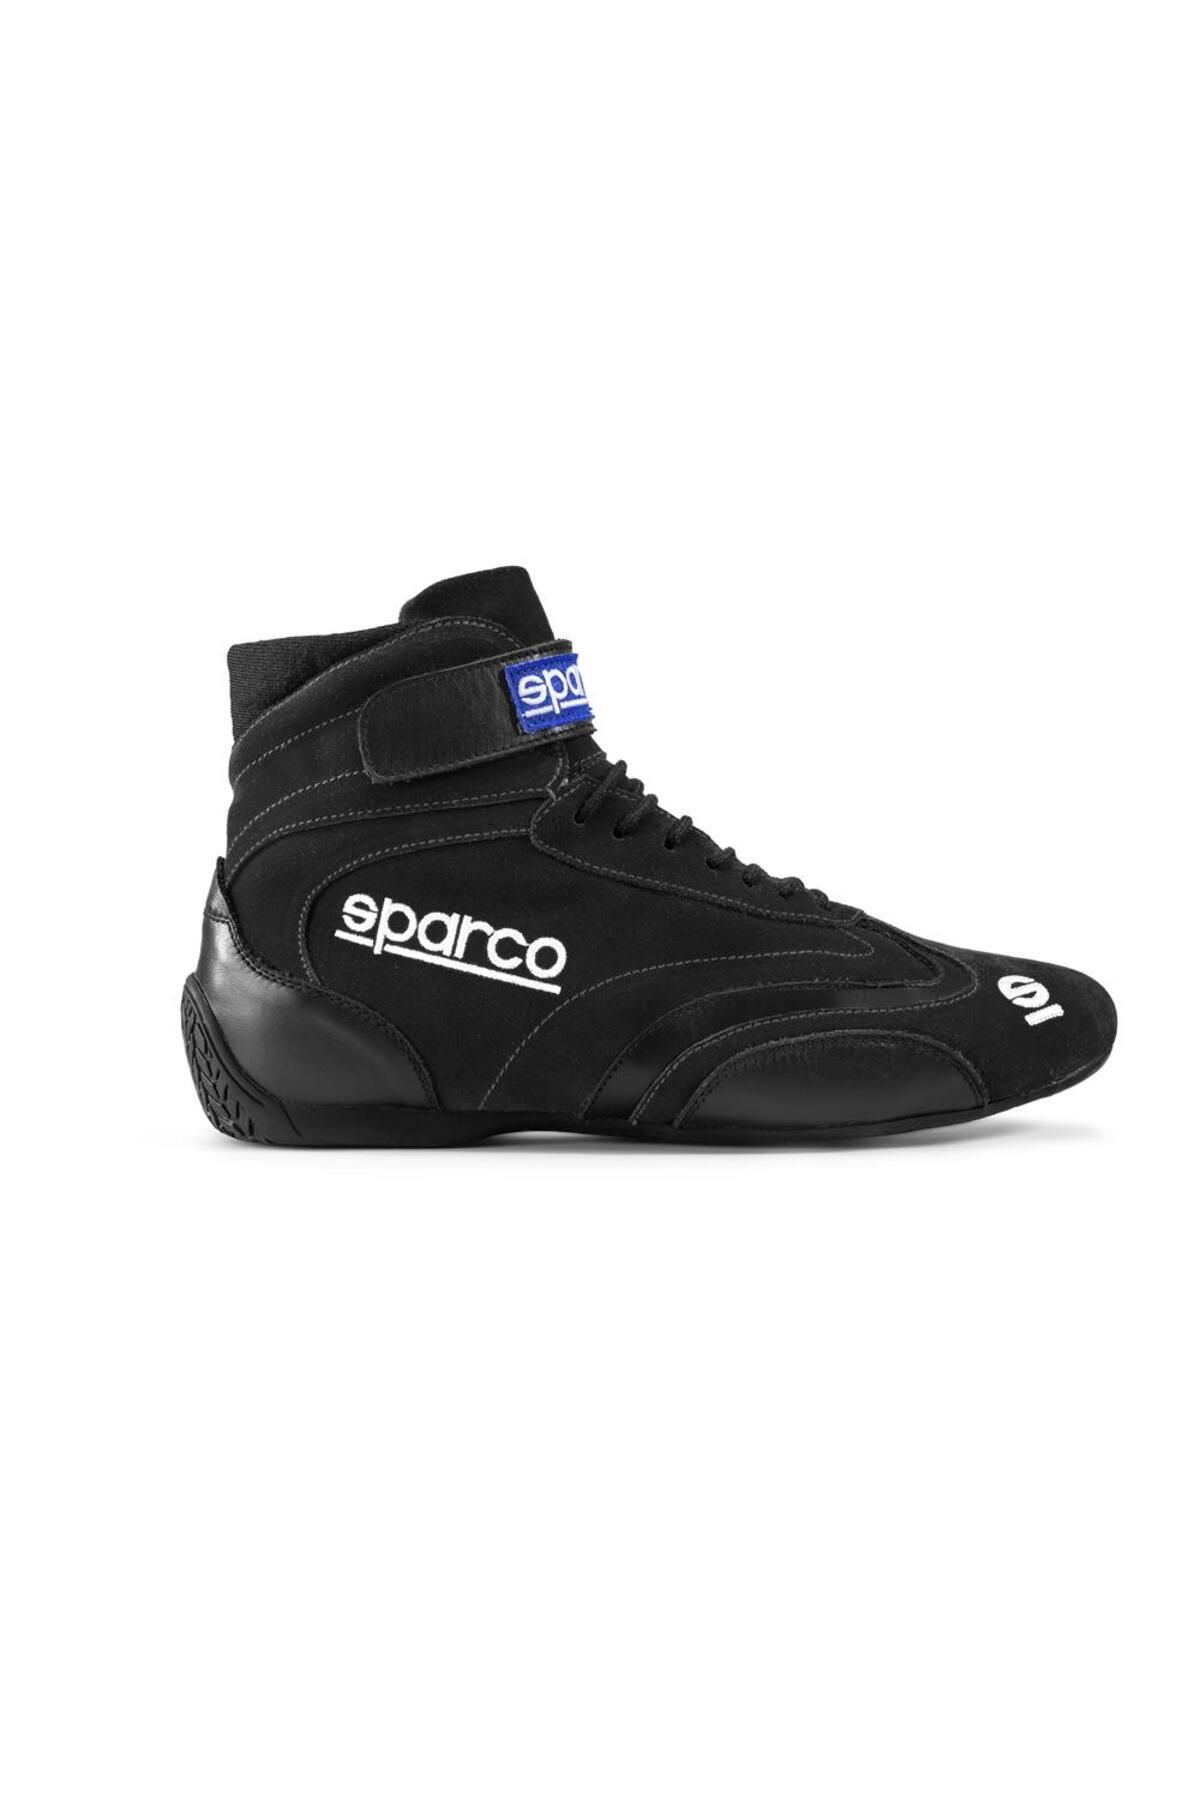 Sparco Top Yarış Ayakkabısı Fia Onaylı Siyah 45 Numara